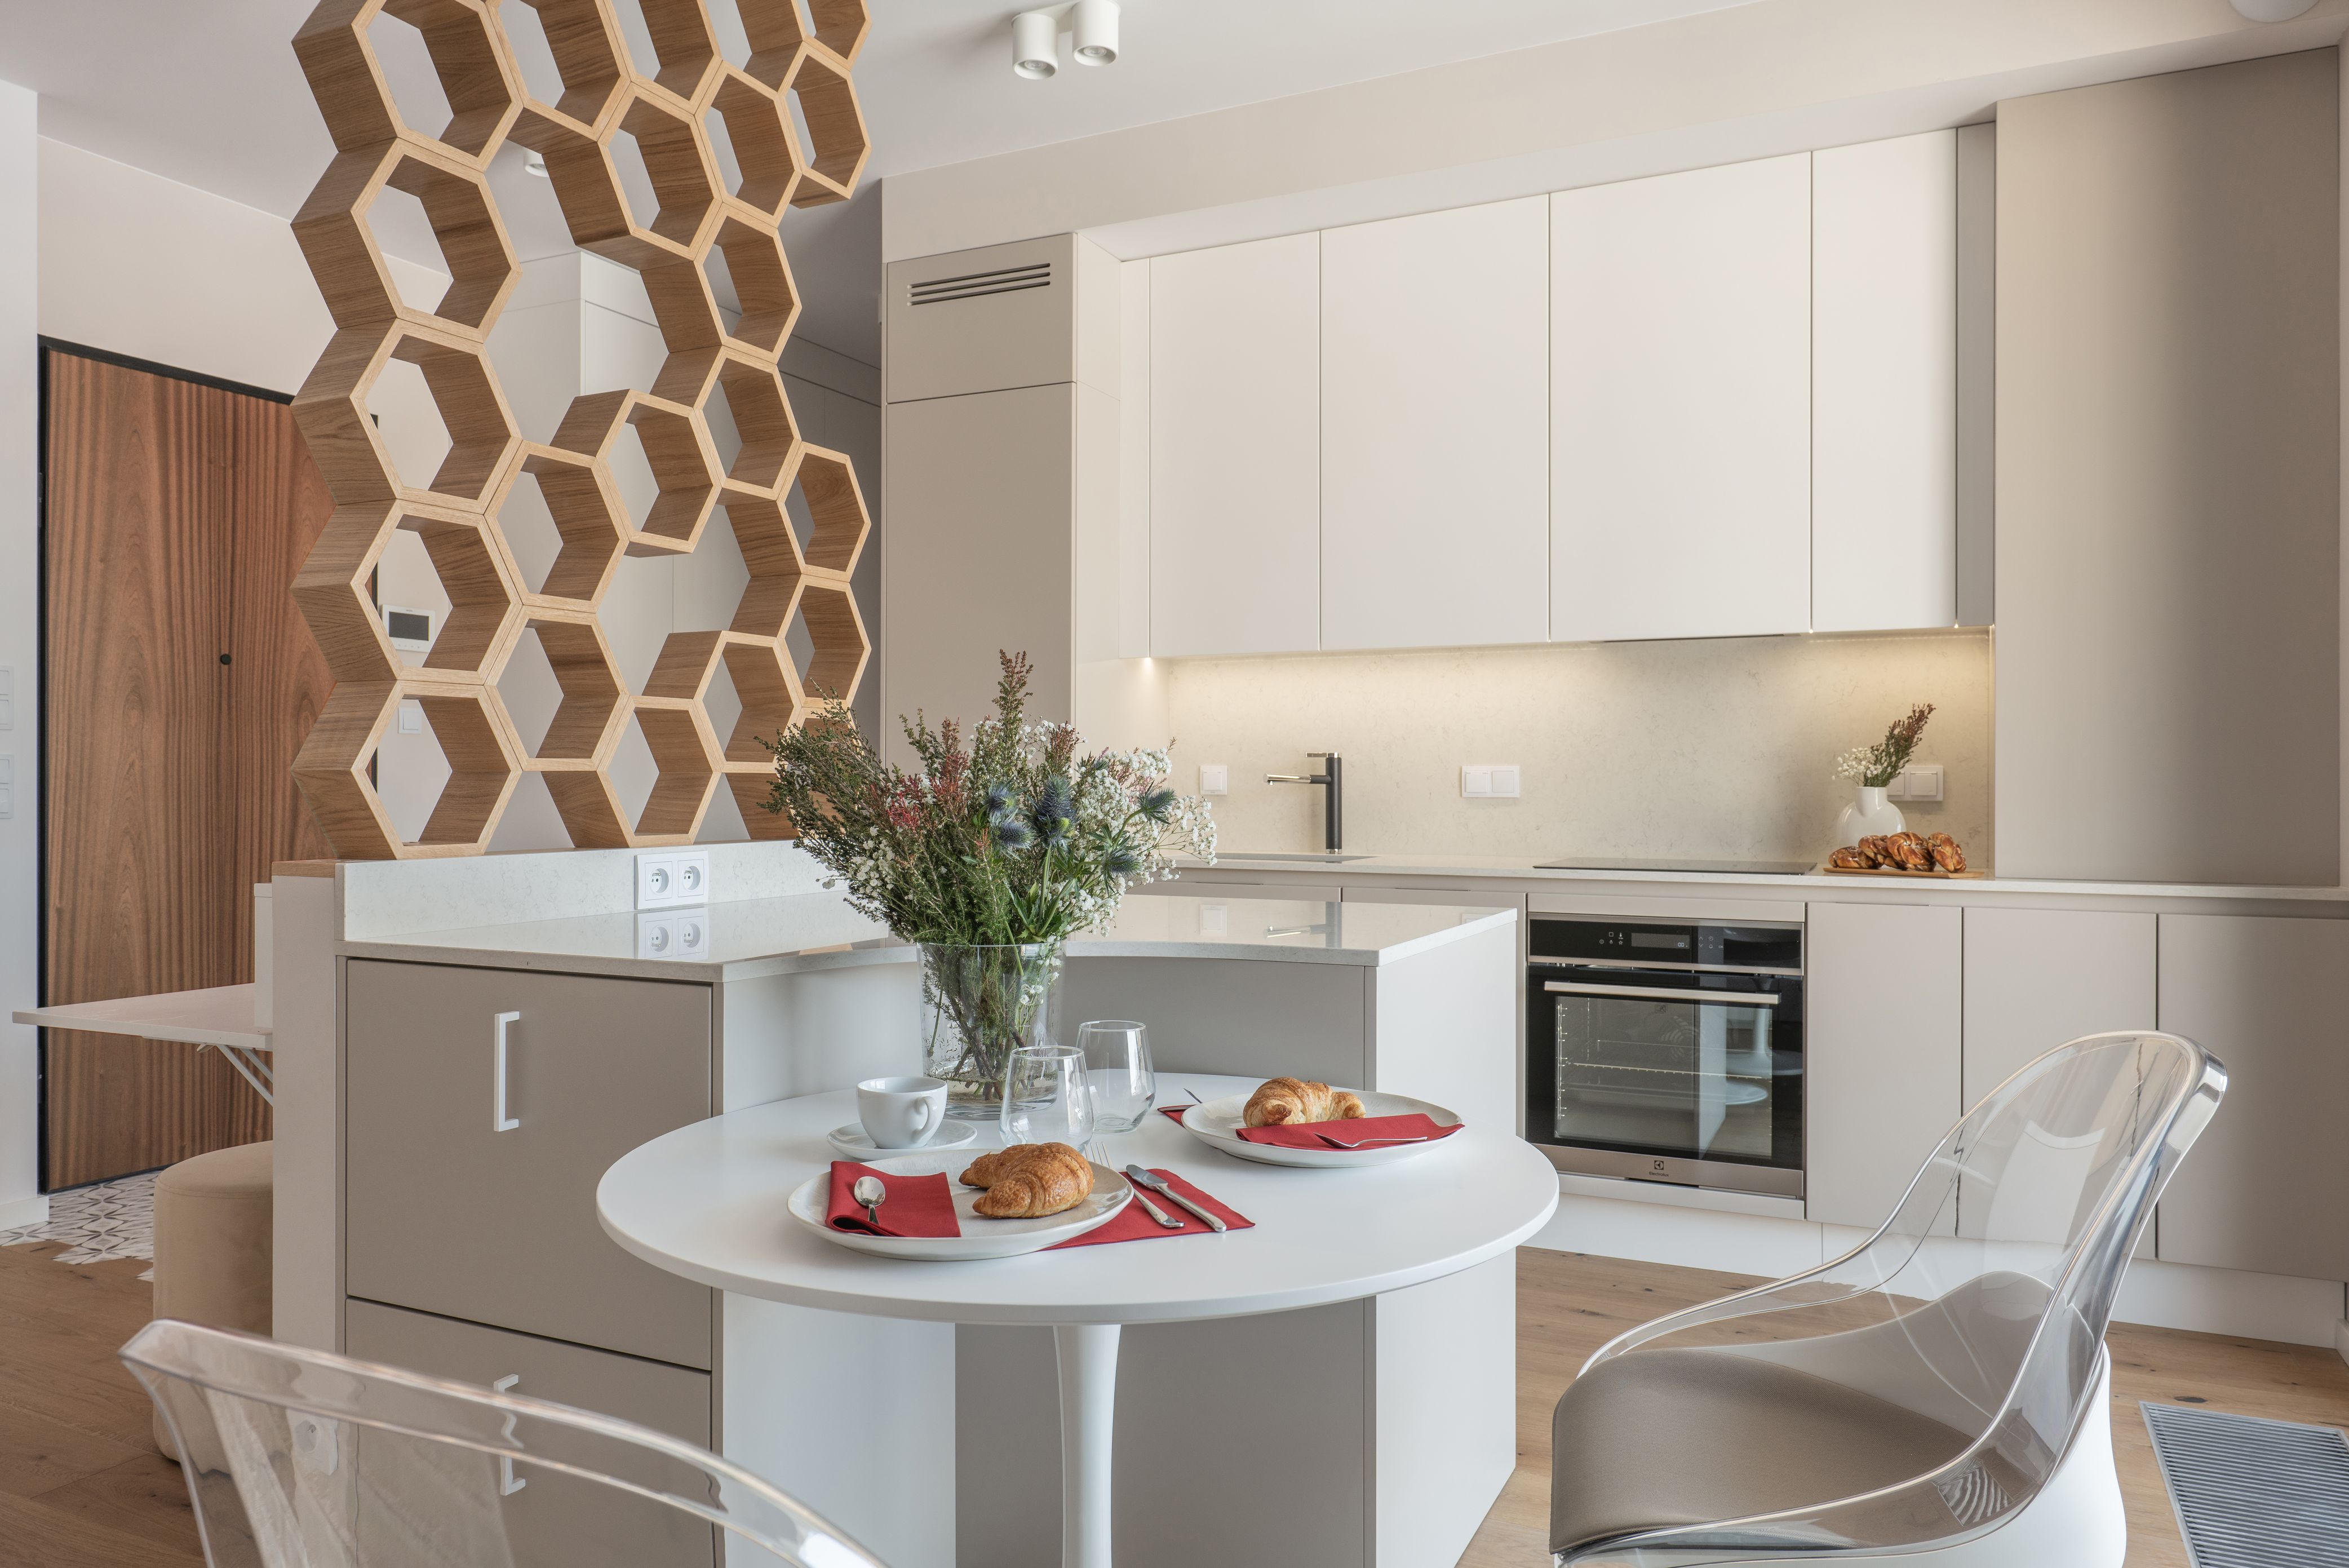 Ciekawy pomysł na oddzielenie salonu od kuchni: heksagonalna dekoracja. Projekt wnętrza i zdjęcie KODO Projekty i Realizacje Wnętrz